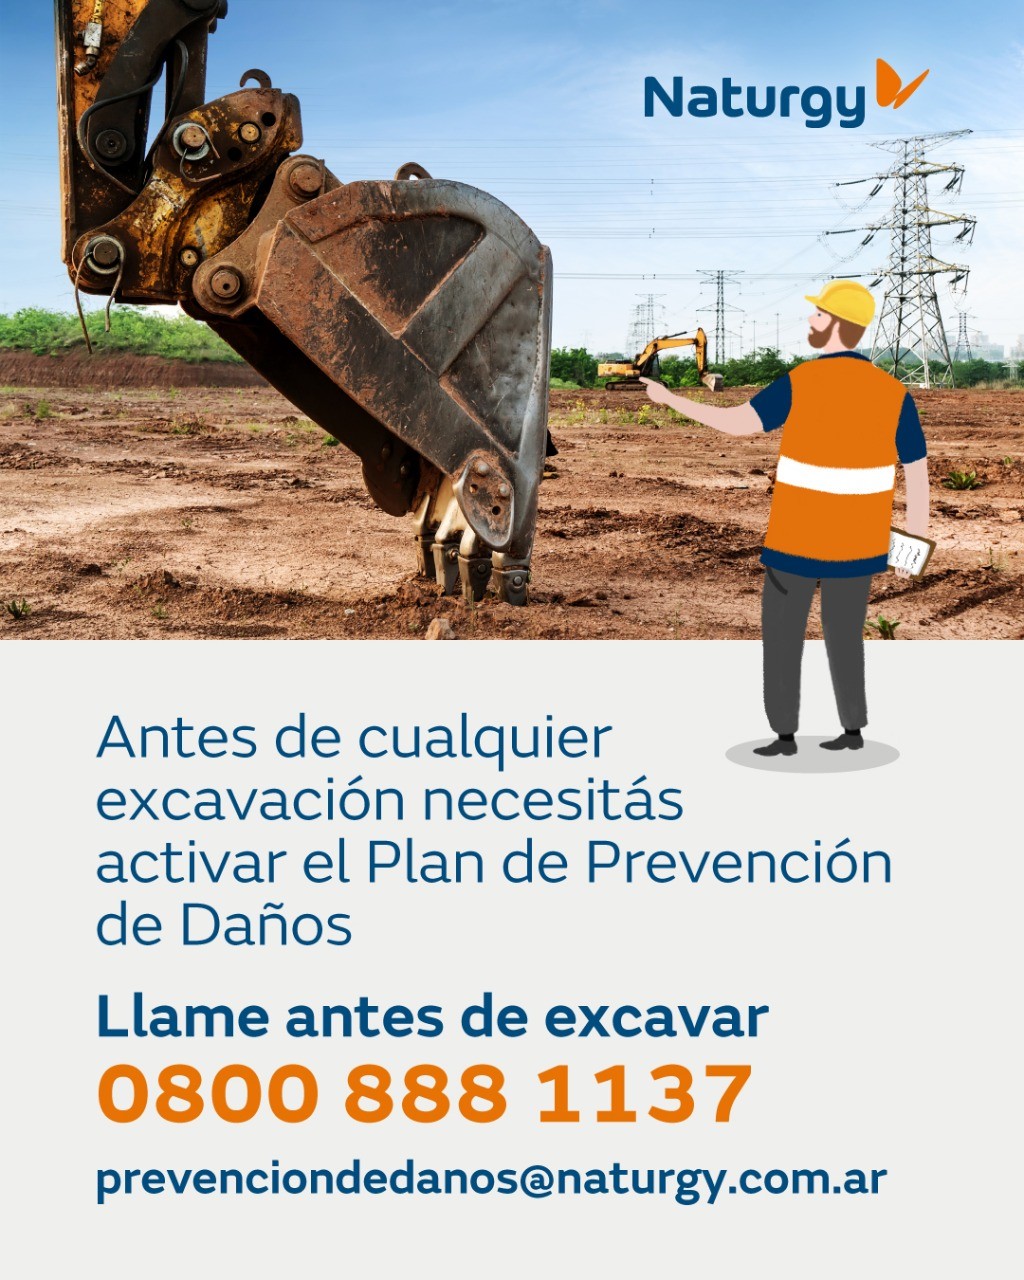 “Llame antes de excavar”  La campaña de seguridad de Naturgy